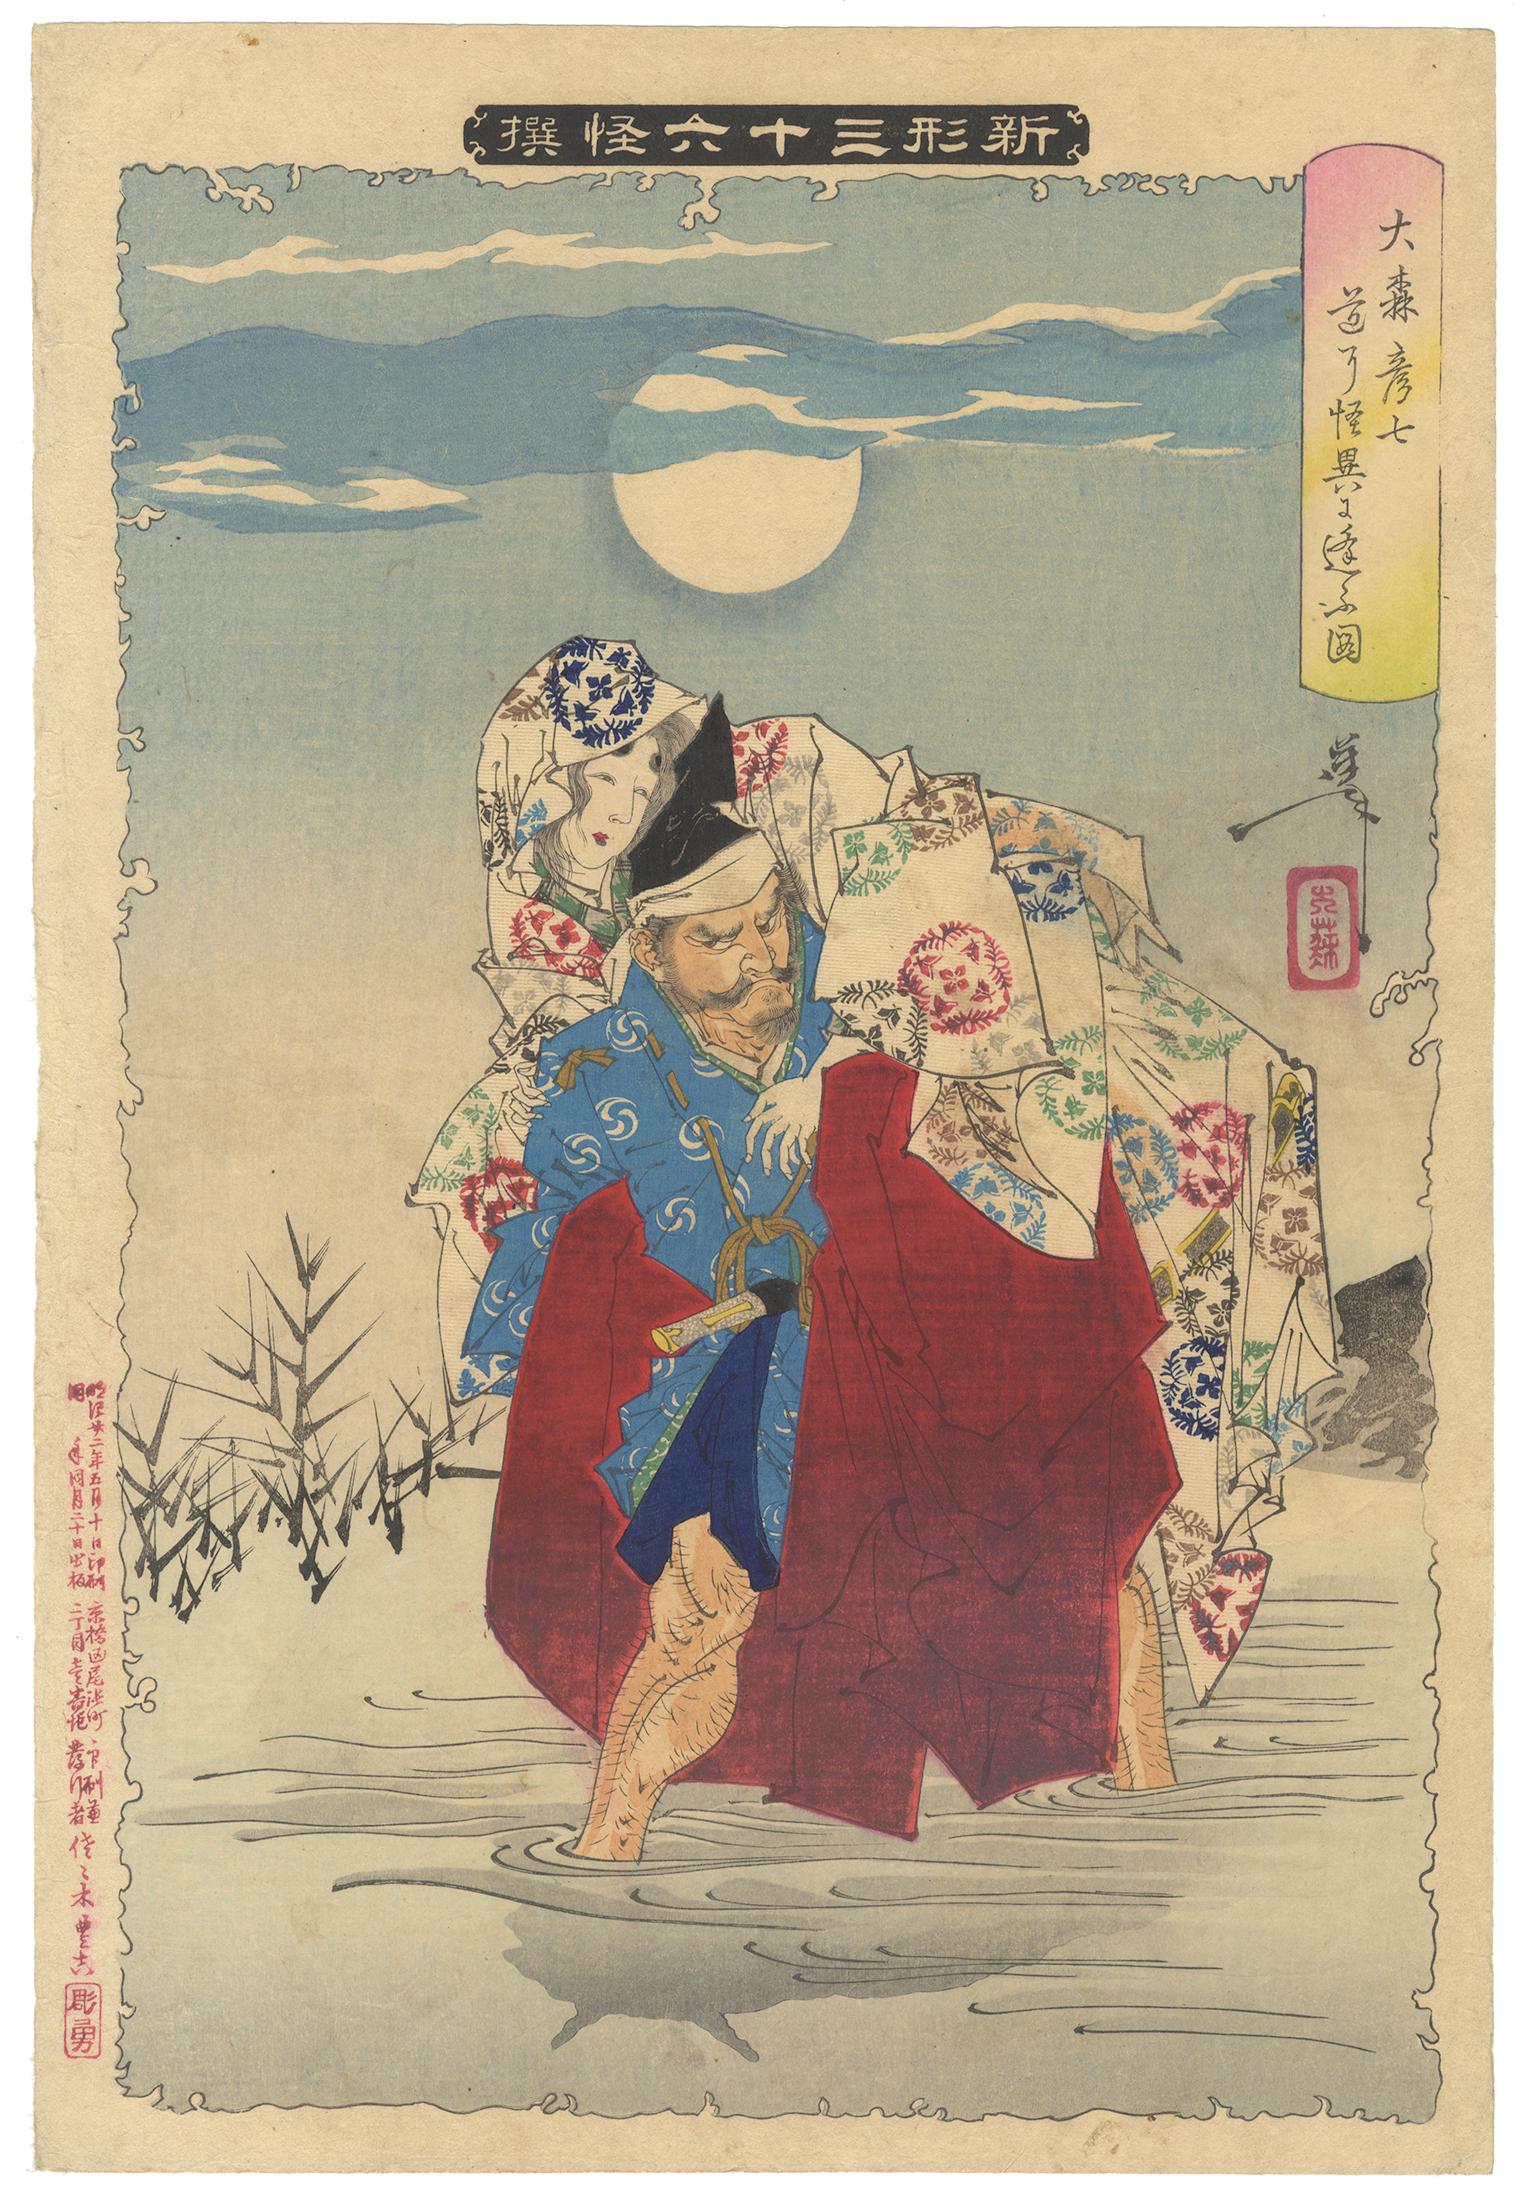 Tsukioka Yoshitoshi Portrait Print - Yoshitoshi, Original Japanese Woodblock Print, Ghost, River, Moon, Ukiyo-e Art 